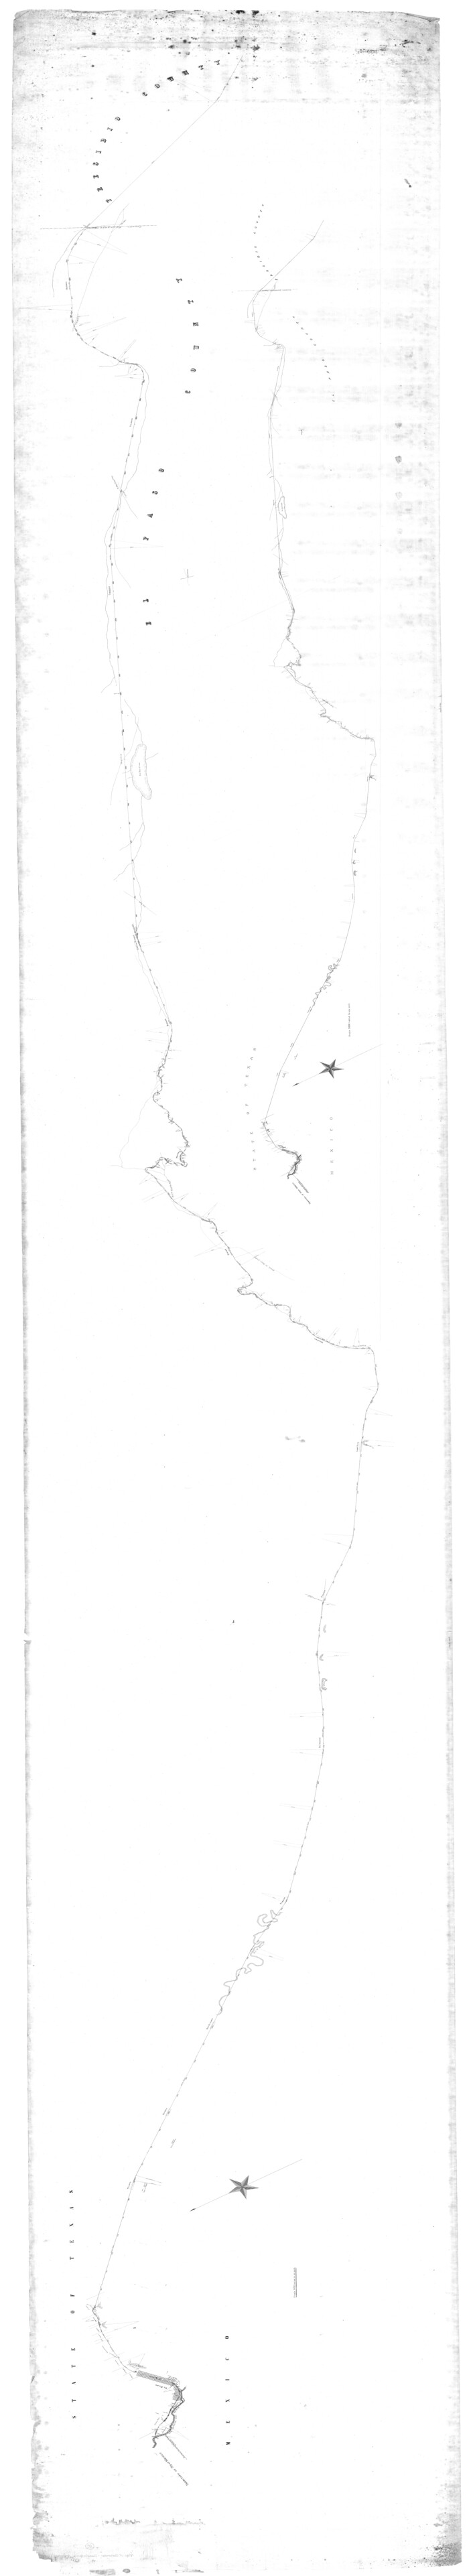 64719, [Galveston, Harrisburg & San Antonio from El Paso to El Paso-Presidio county boundary], General Map Collection